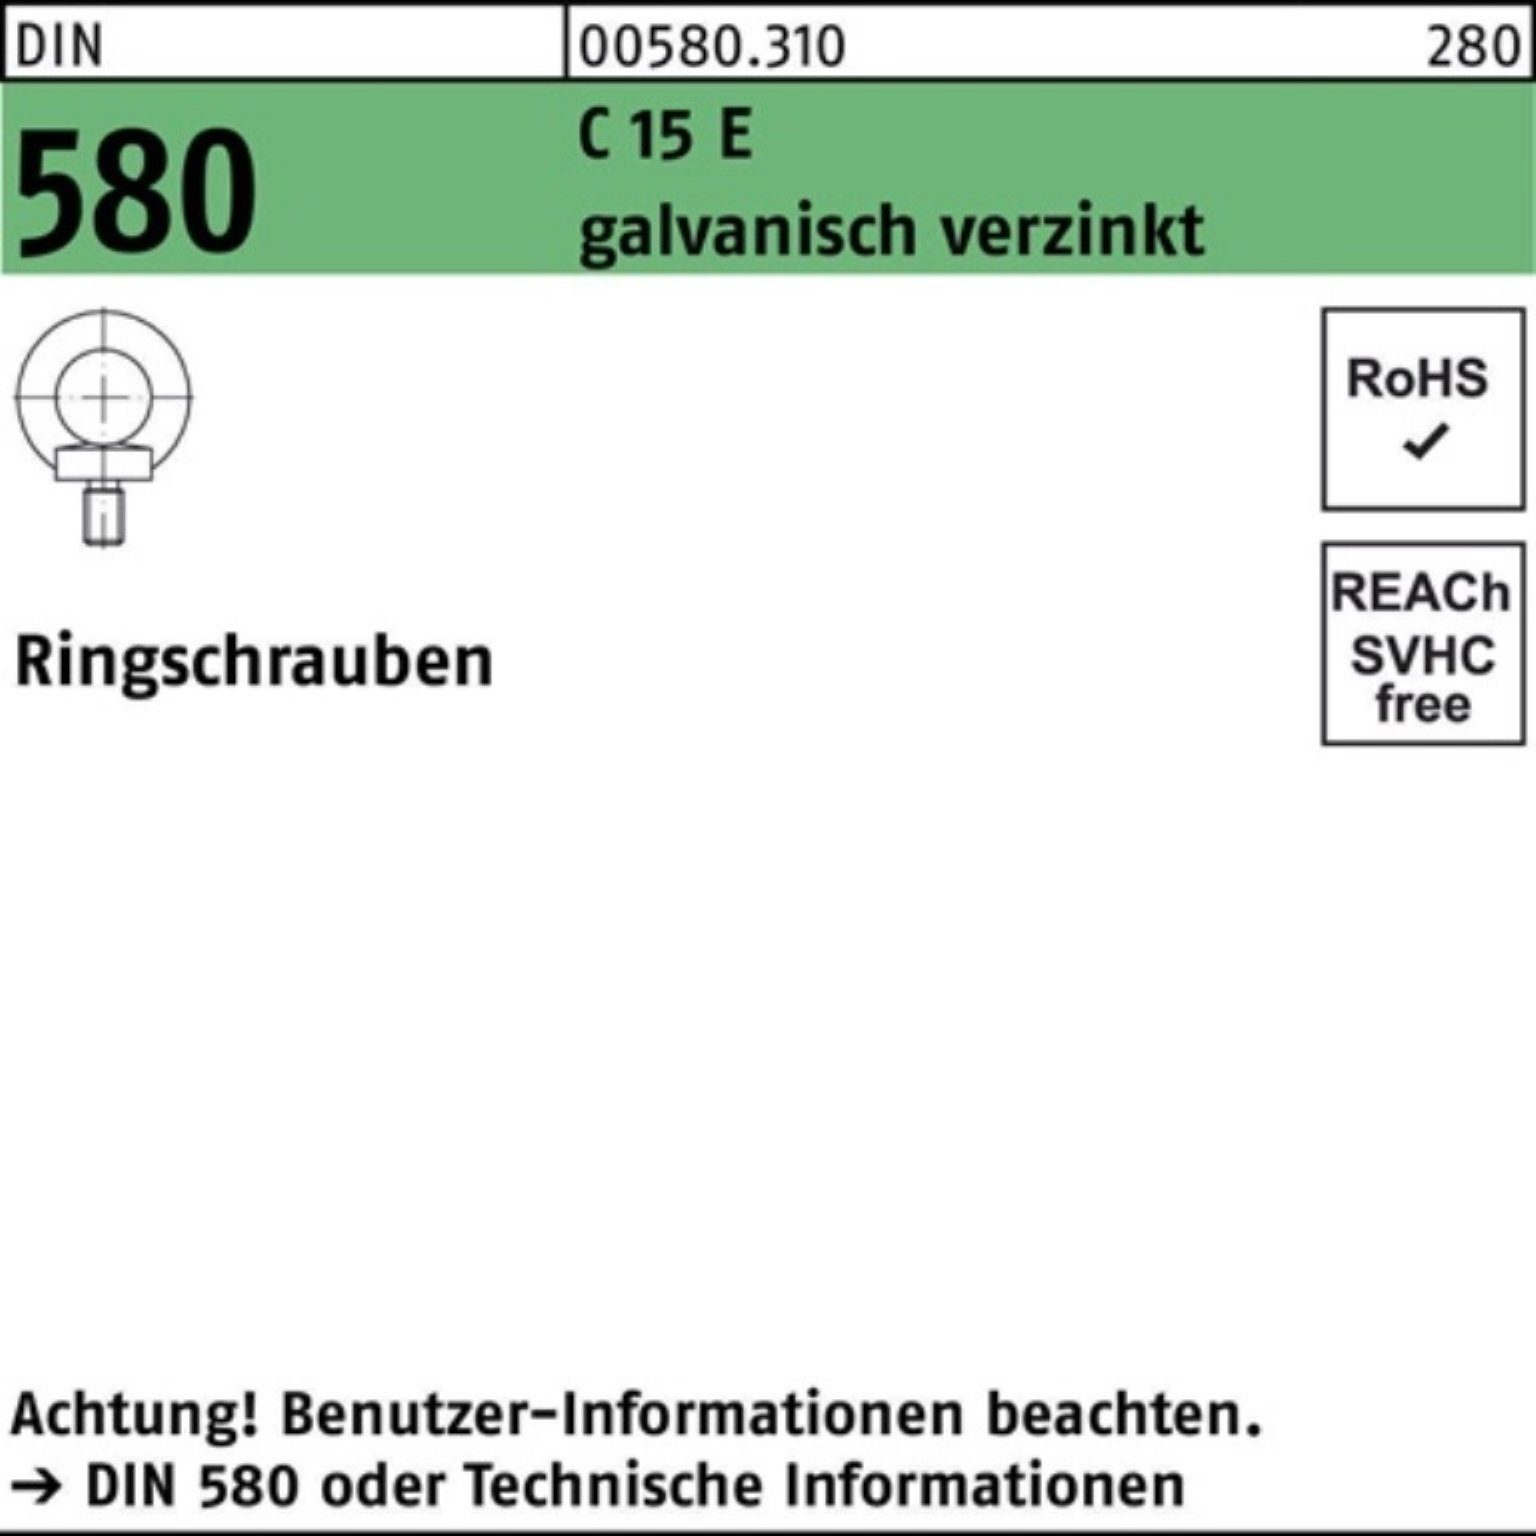 Reyher Schraube 100er Pack Ringschraube DIN 580 M36 C 15 E galv.verz. 1 Stück DIN 580